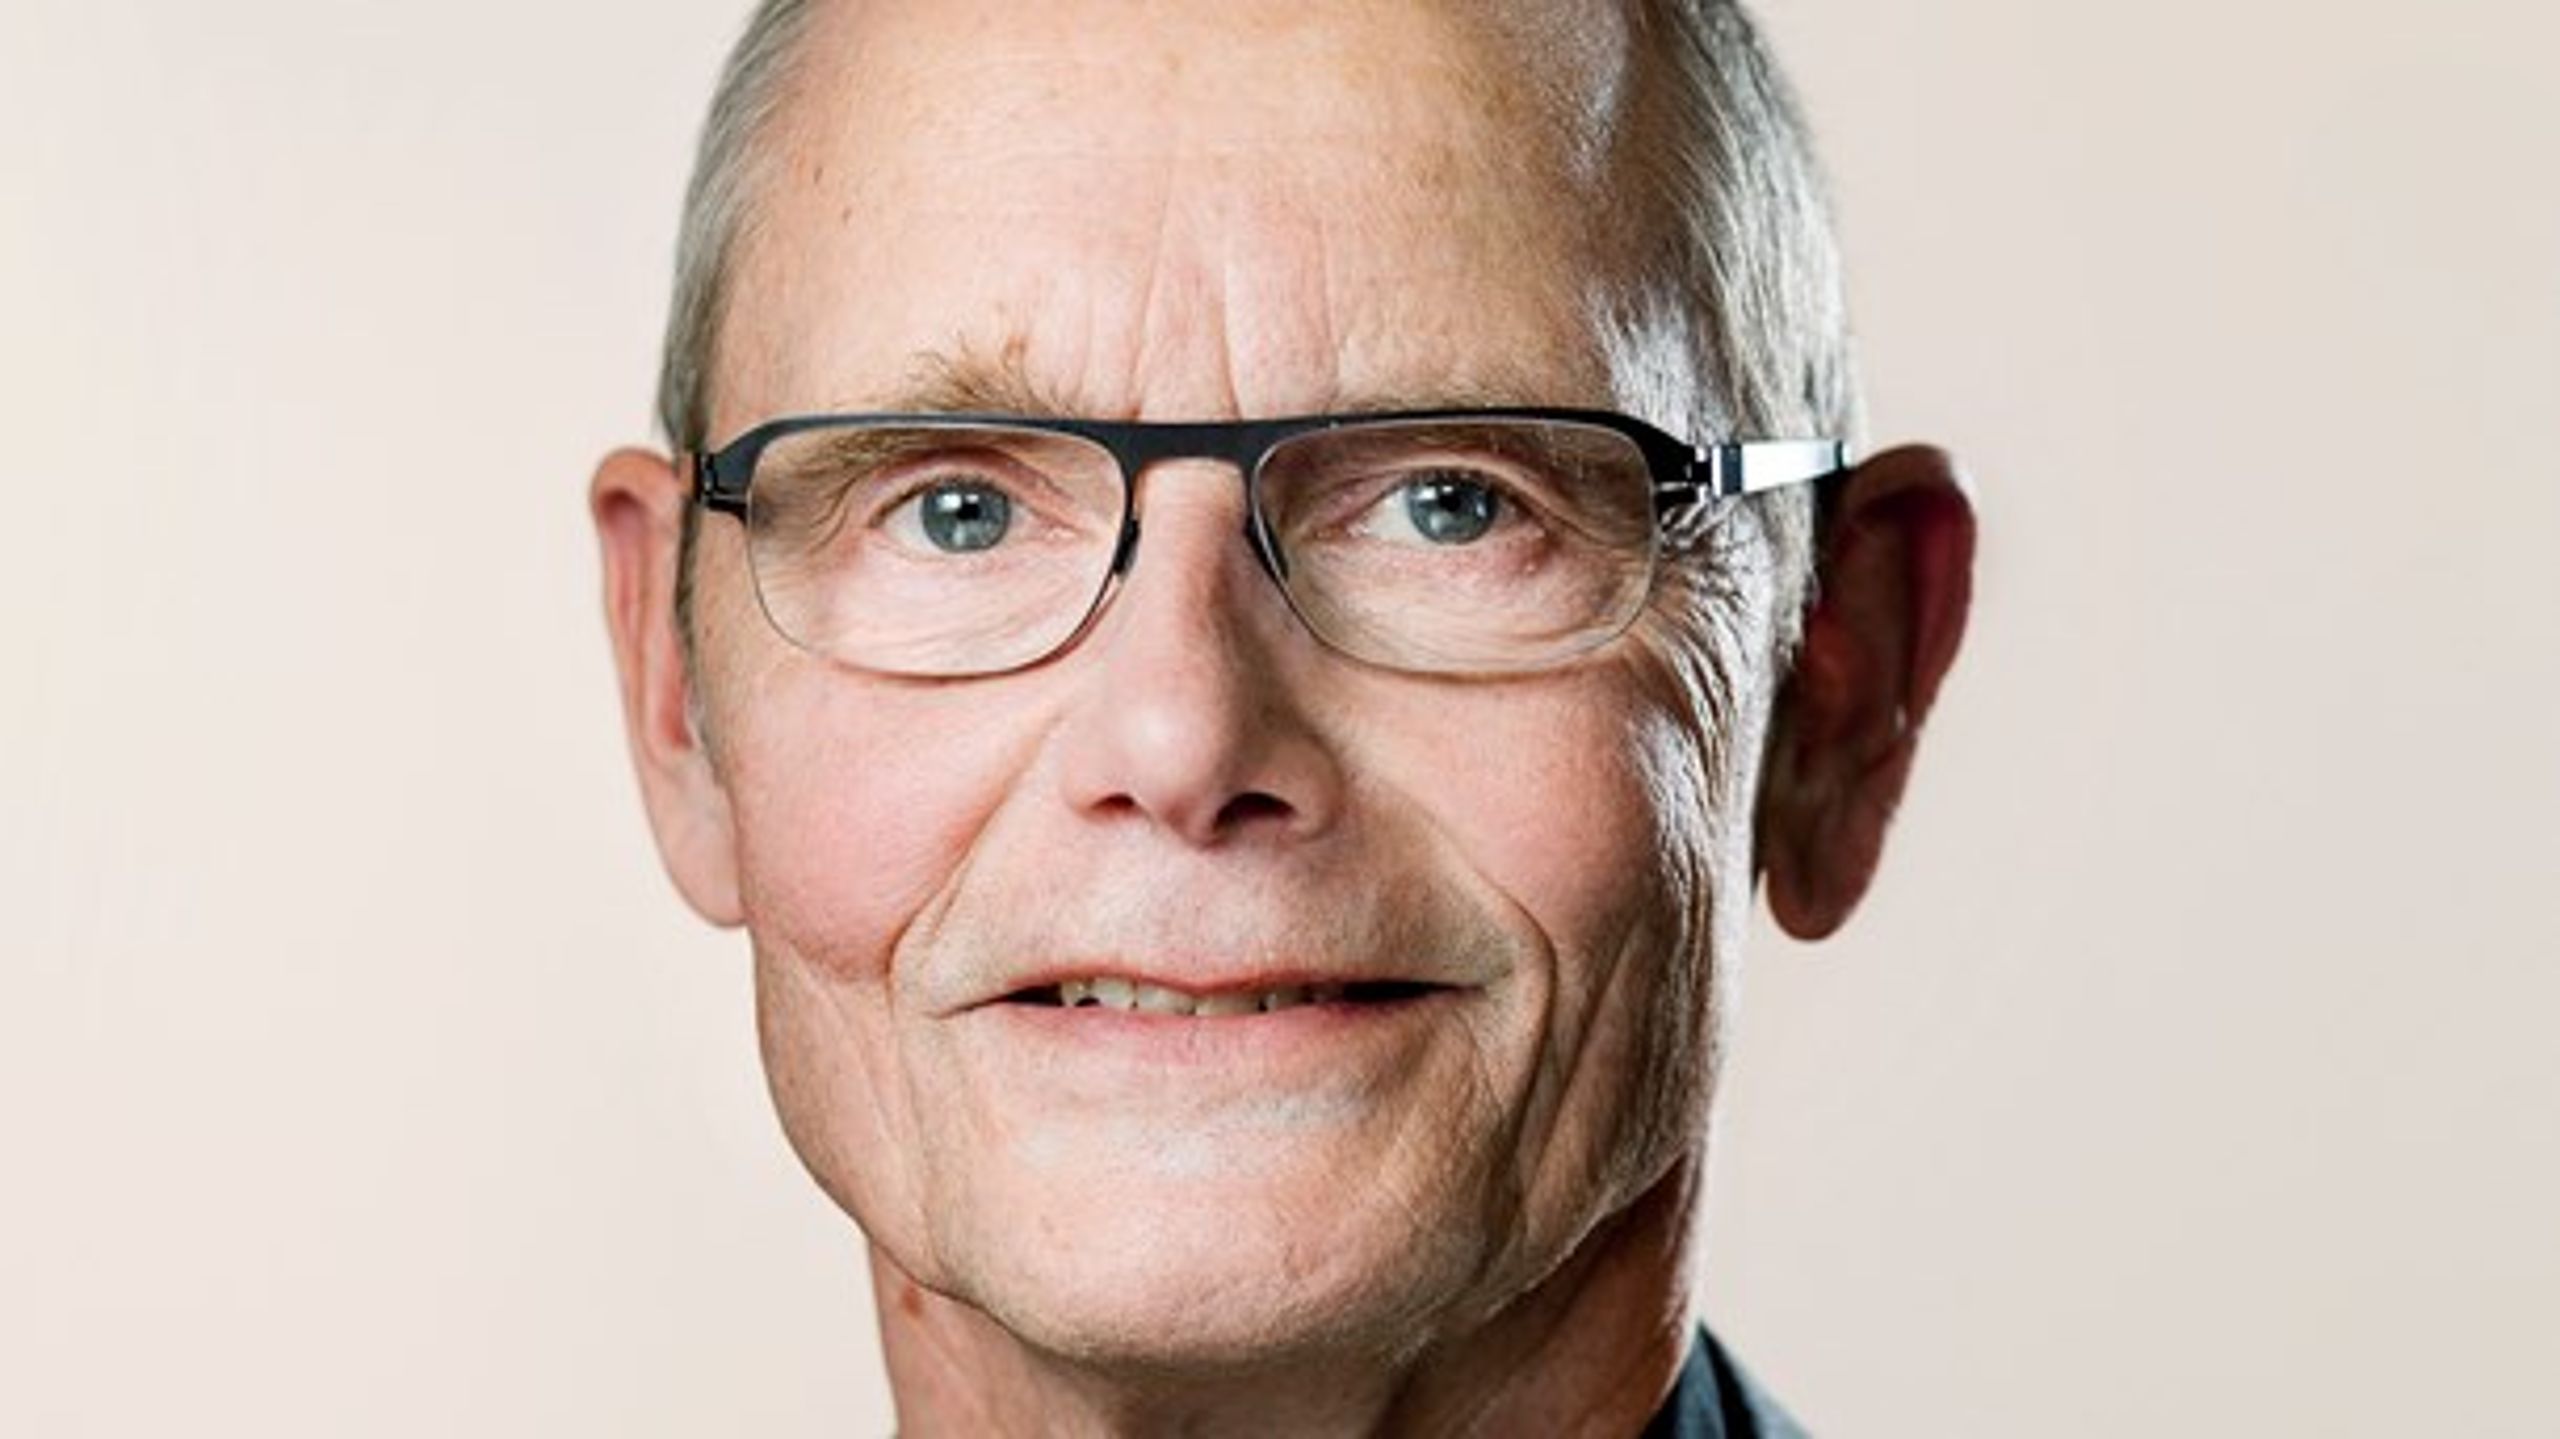 Regeringens forslag om at hæve pensionsalderen er forkasteligt, skriver Finn Sørensen (EL).